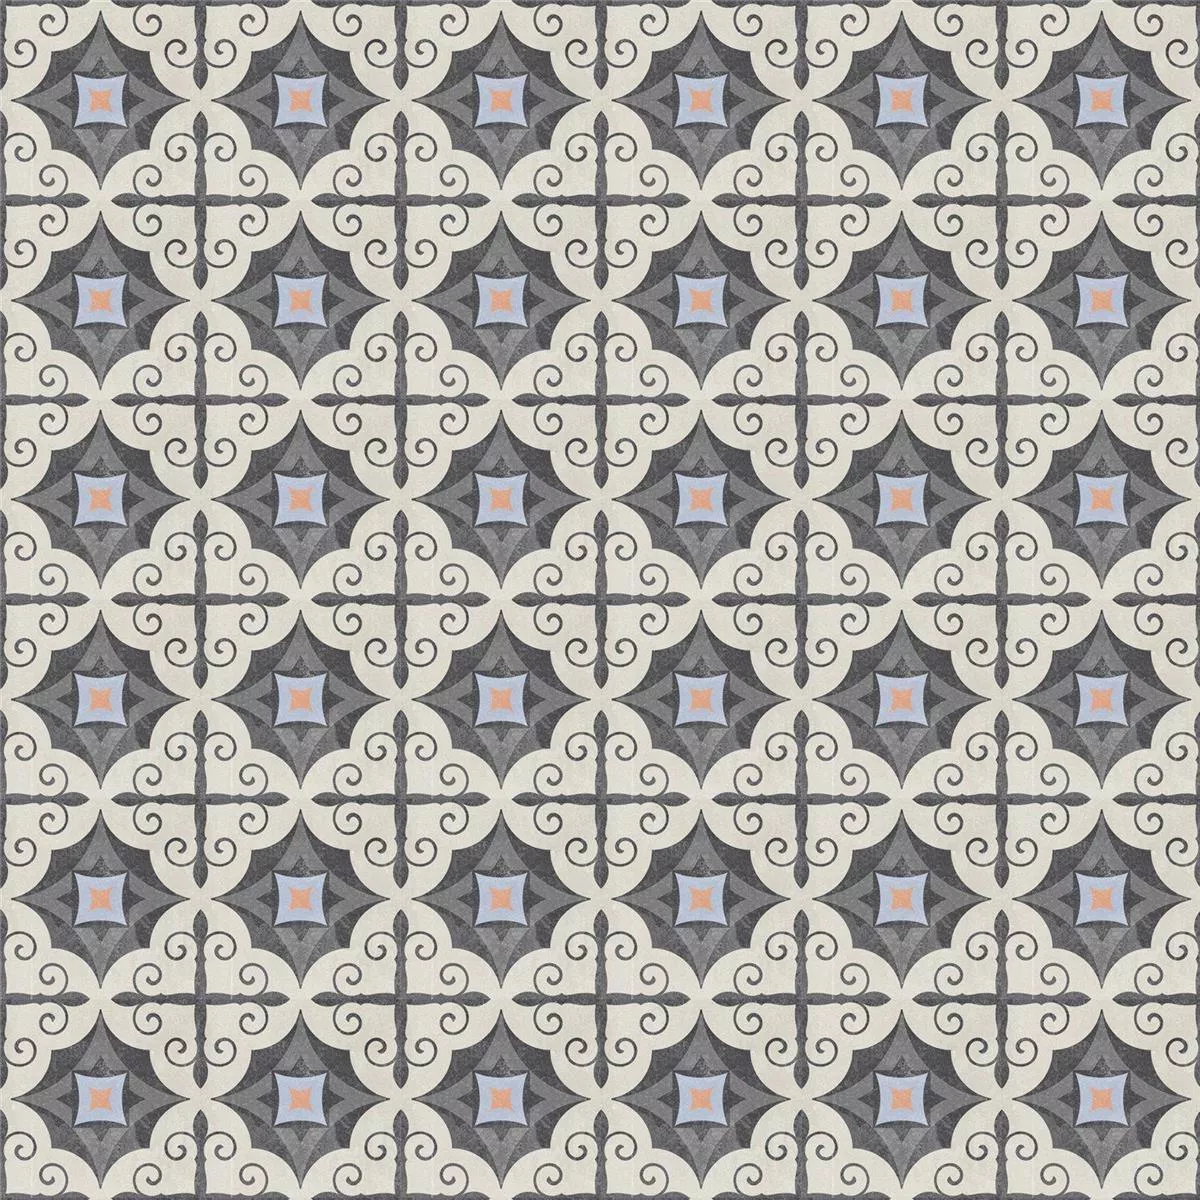 Muestra Azulejos De Cemento Aspecto Retro Toulon Pavimento Serrano 18,6x18,6cm